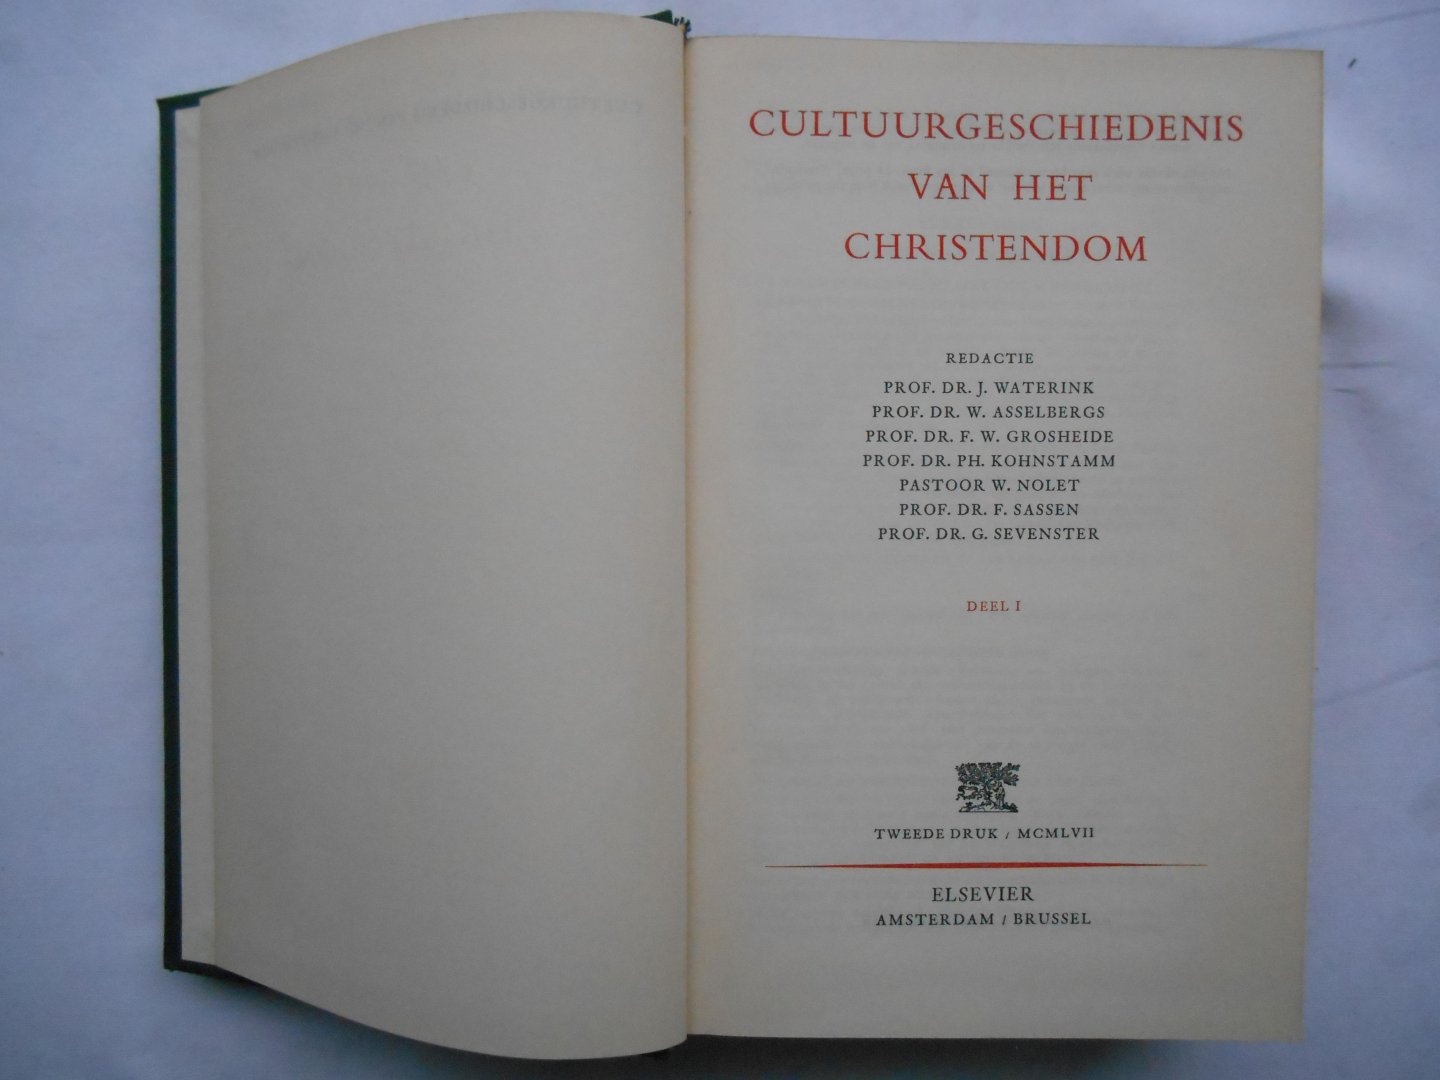 Waterink, Prof. Dr. J., Asselbergs, Prof. Dr. W. en anderen - Cultuurgeschiedenis van het Christendom - delen I en II